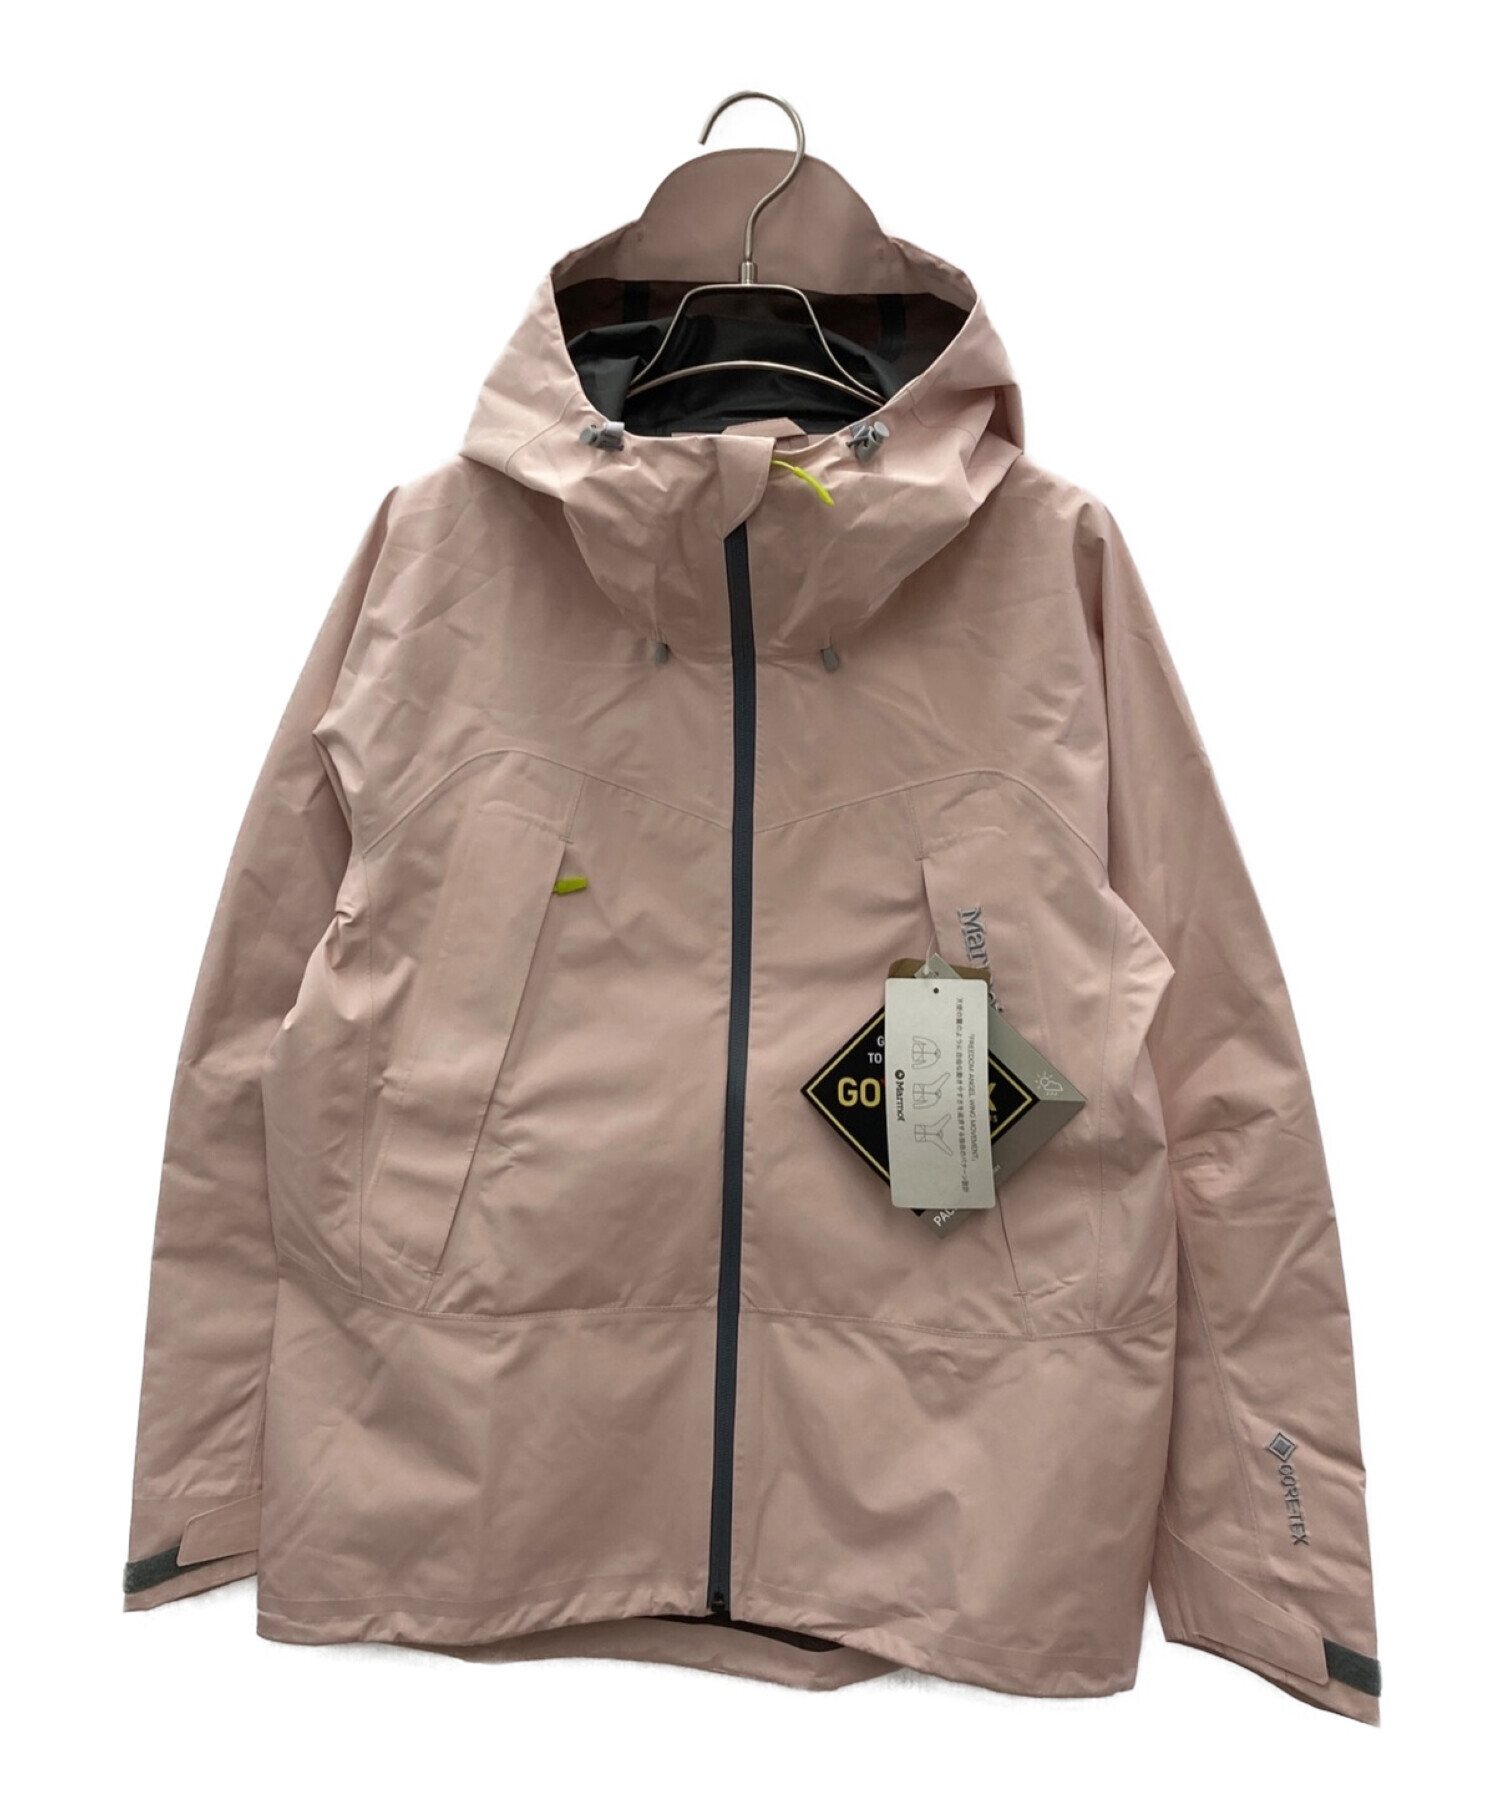 Marmot (マーモット) クラウドブレーカージャケット ピンク サイズ:M 未使用品